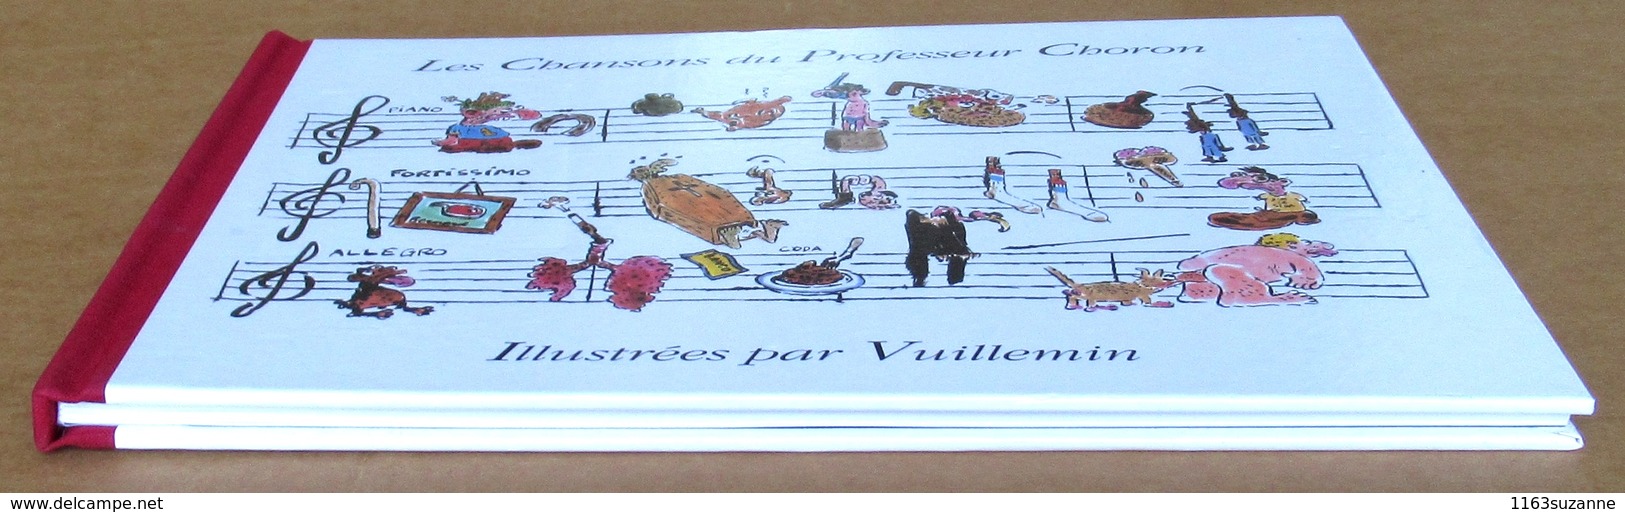 EO Avec Sa K7 > LES CHANSONS DU PROFESSEUR CHORON Illustrées Par VUILLEMIN (Magic-Strip, 1991) - Vuillemin, Ph.